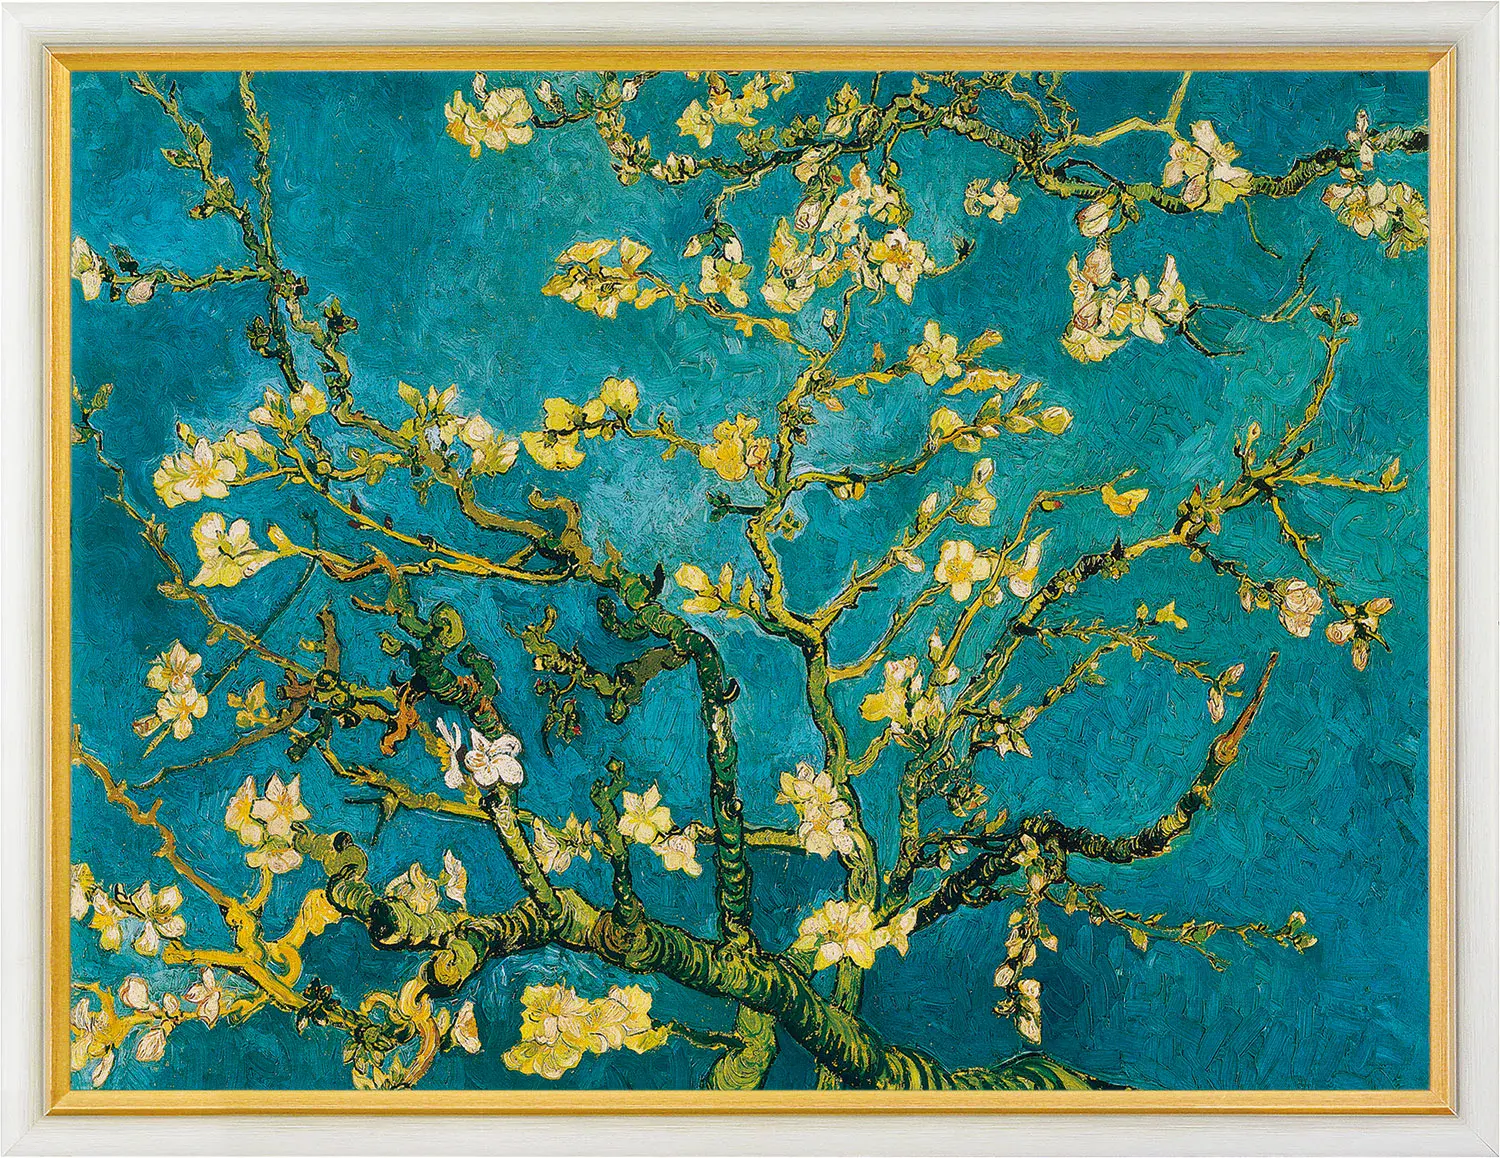 Gemälde "Blühende Mandelbaumzweige" (1890) – Vincent van Gogh